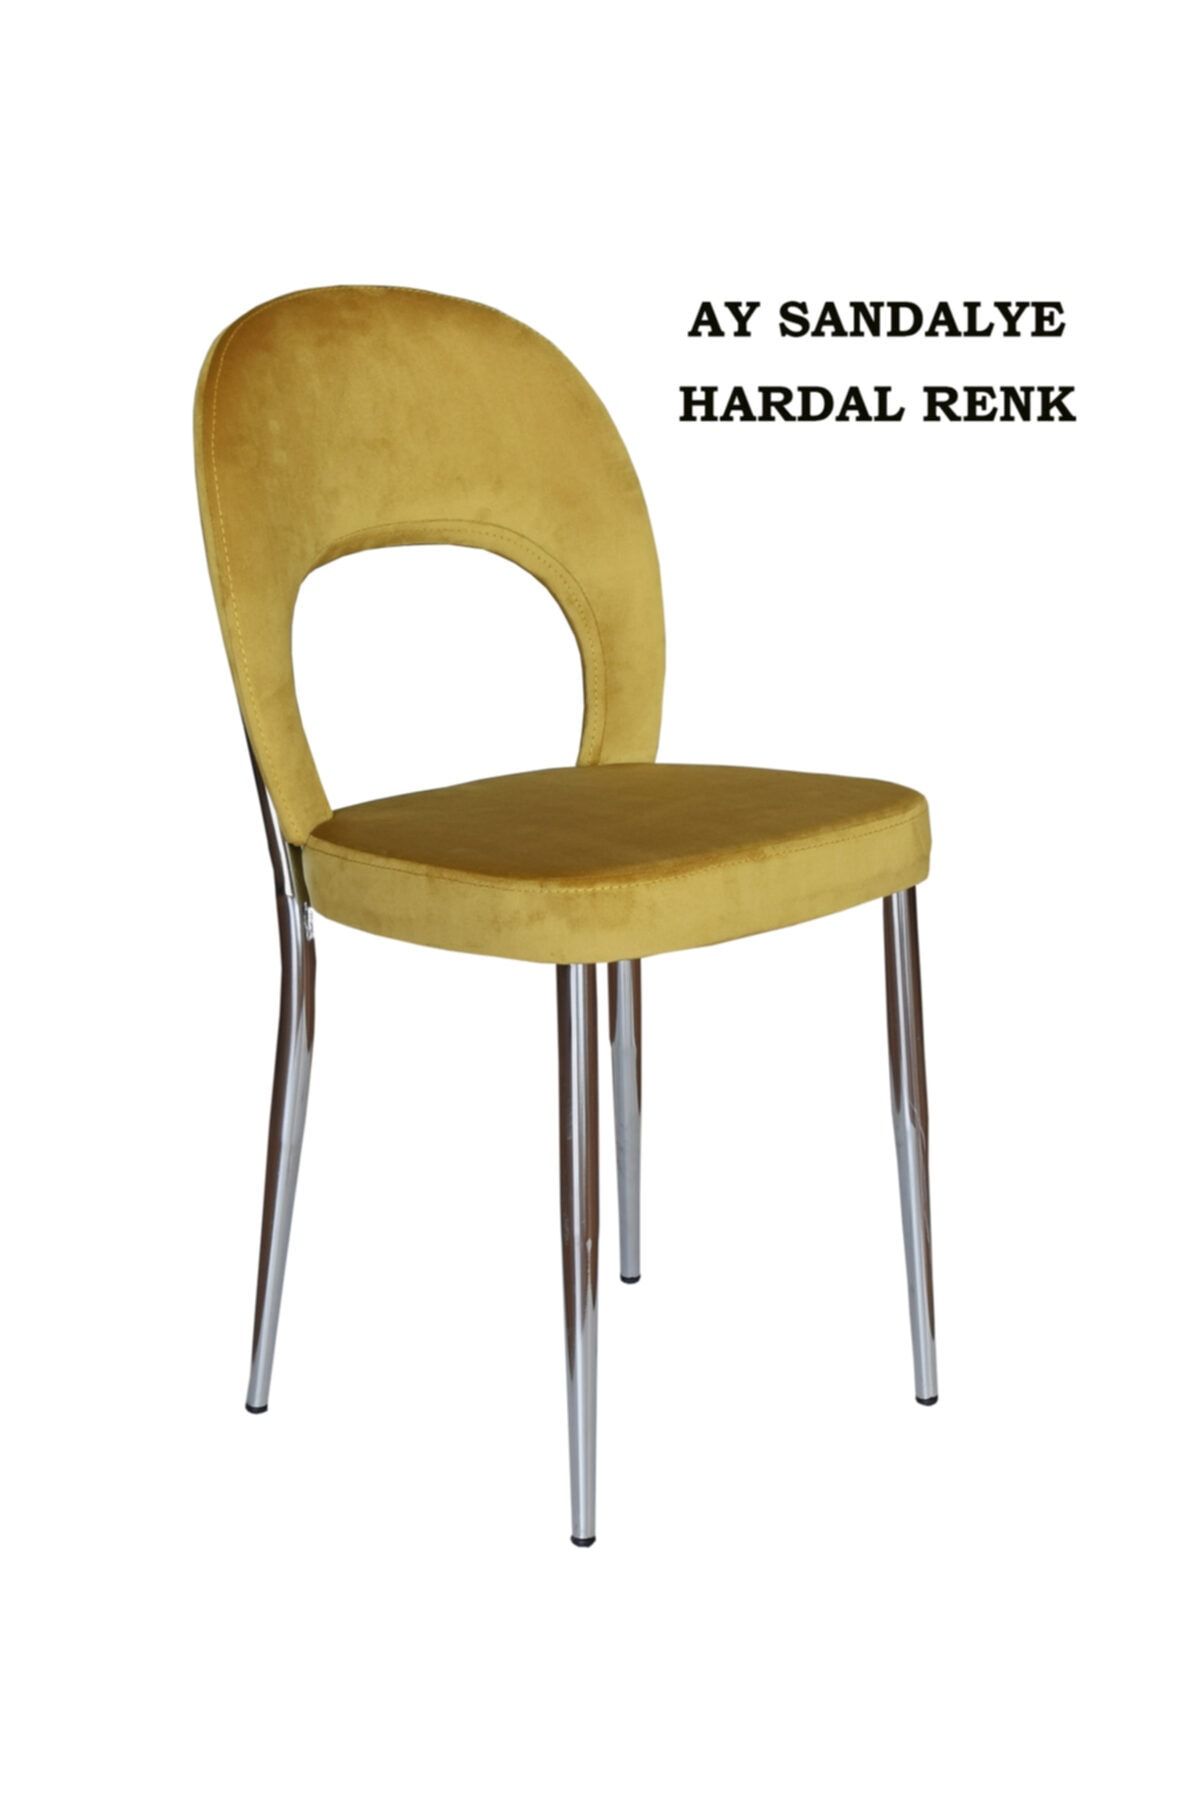 Ankhira Ay Sandalye, Mutfak Sandalyesi, Silinebilir Hardal Renk Kumaş, Krom Ayaklı